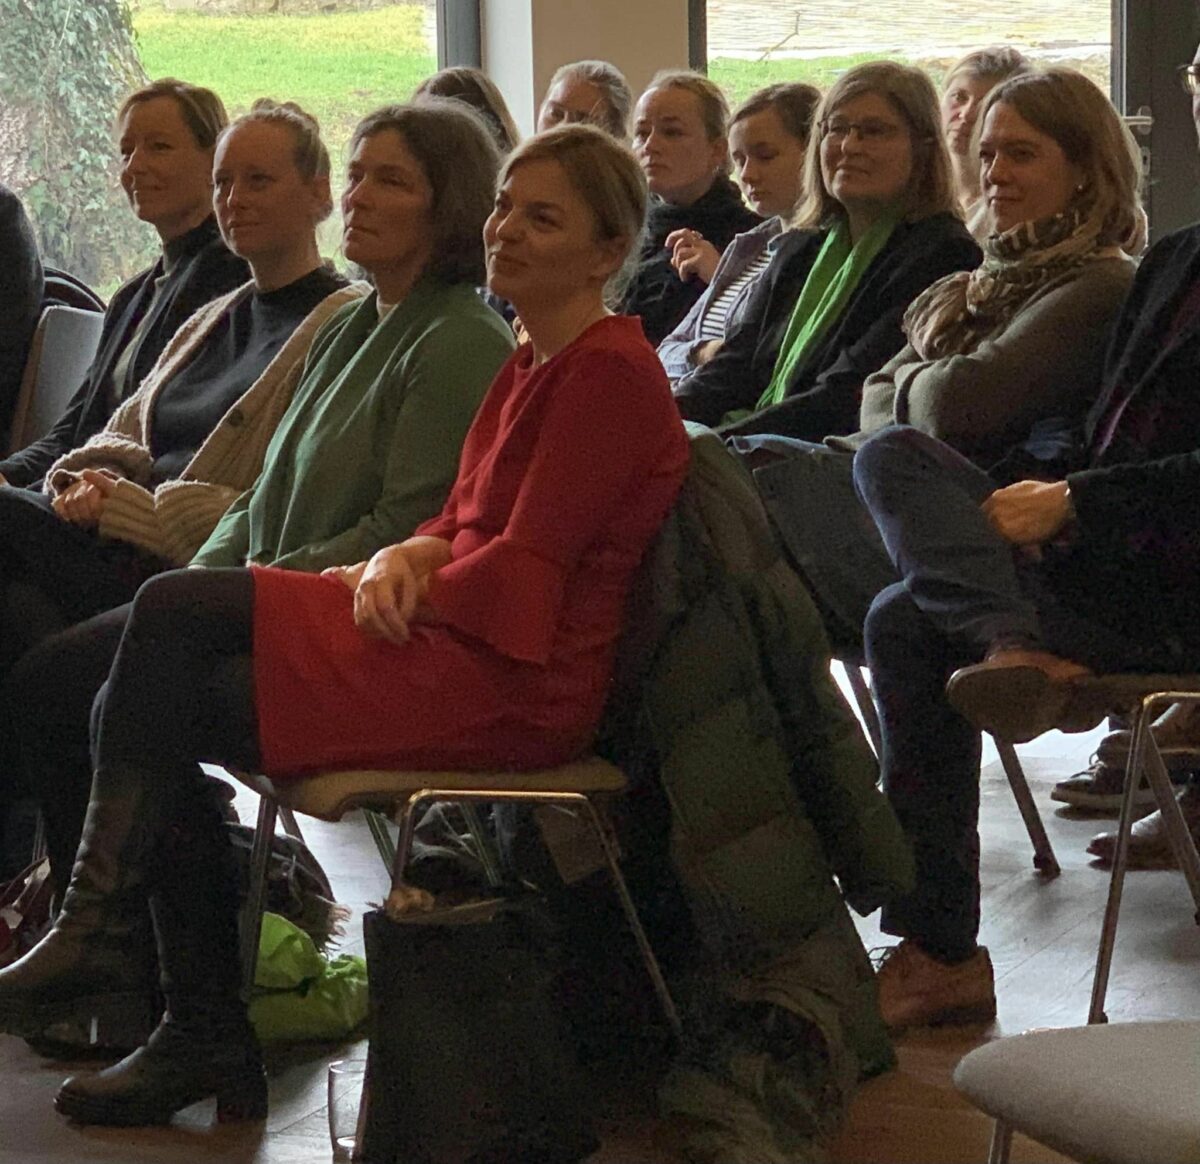 Foto von den Vortragenden Katharina Schulze, Kerstin Celina, Eva-Maria Stöckelein und Eva von Vietinghoff-Scheel, noch im Publikum sitzend.